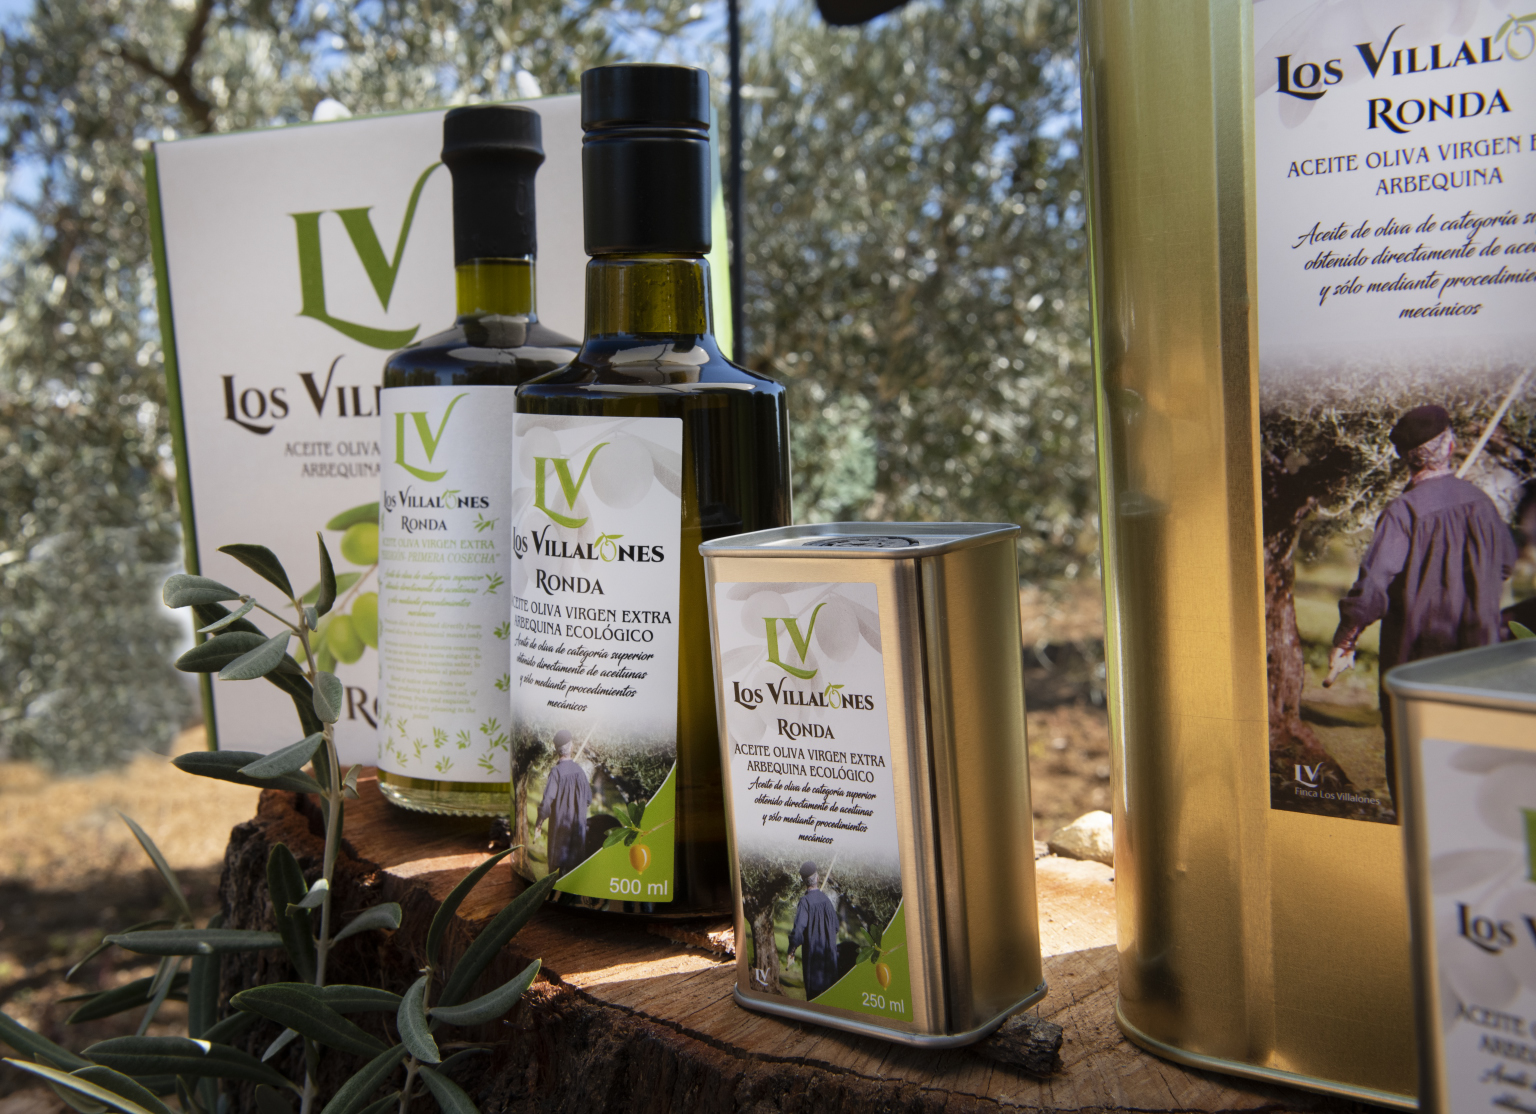 Bouteille d'huile Bouteilles en verre Bouteille d'huile d'olive de 500 ml  avec joint